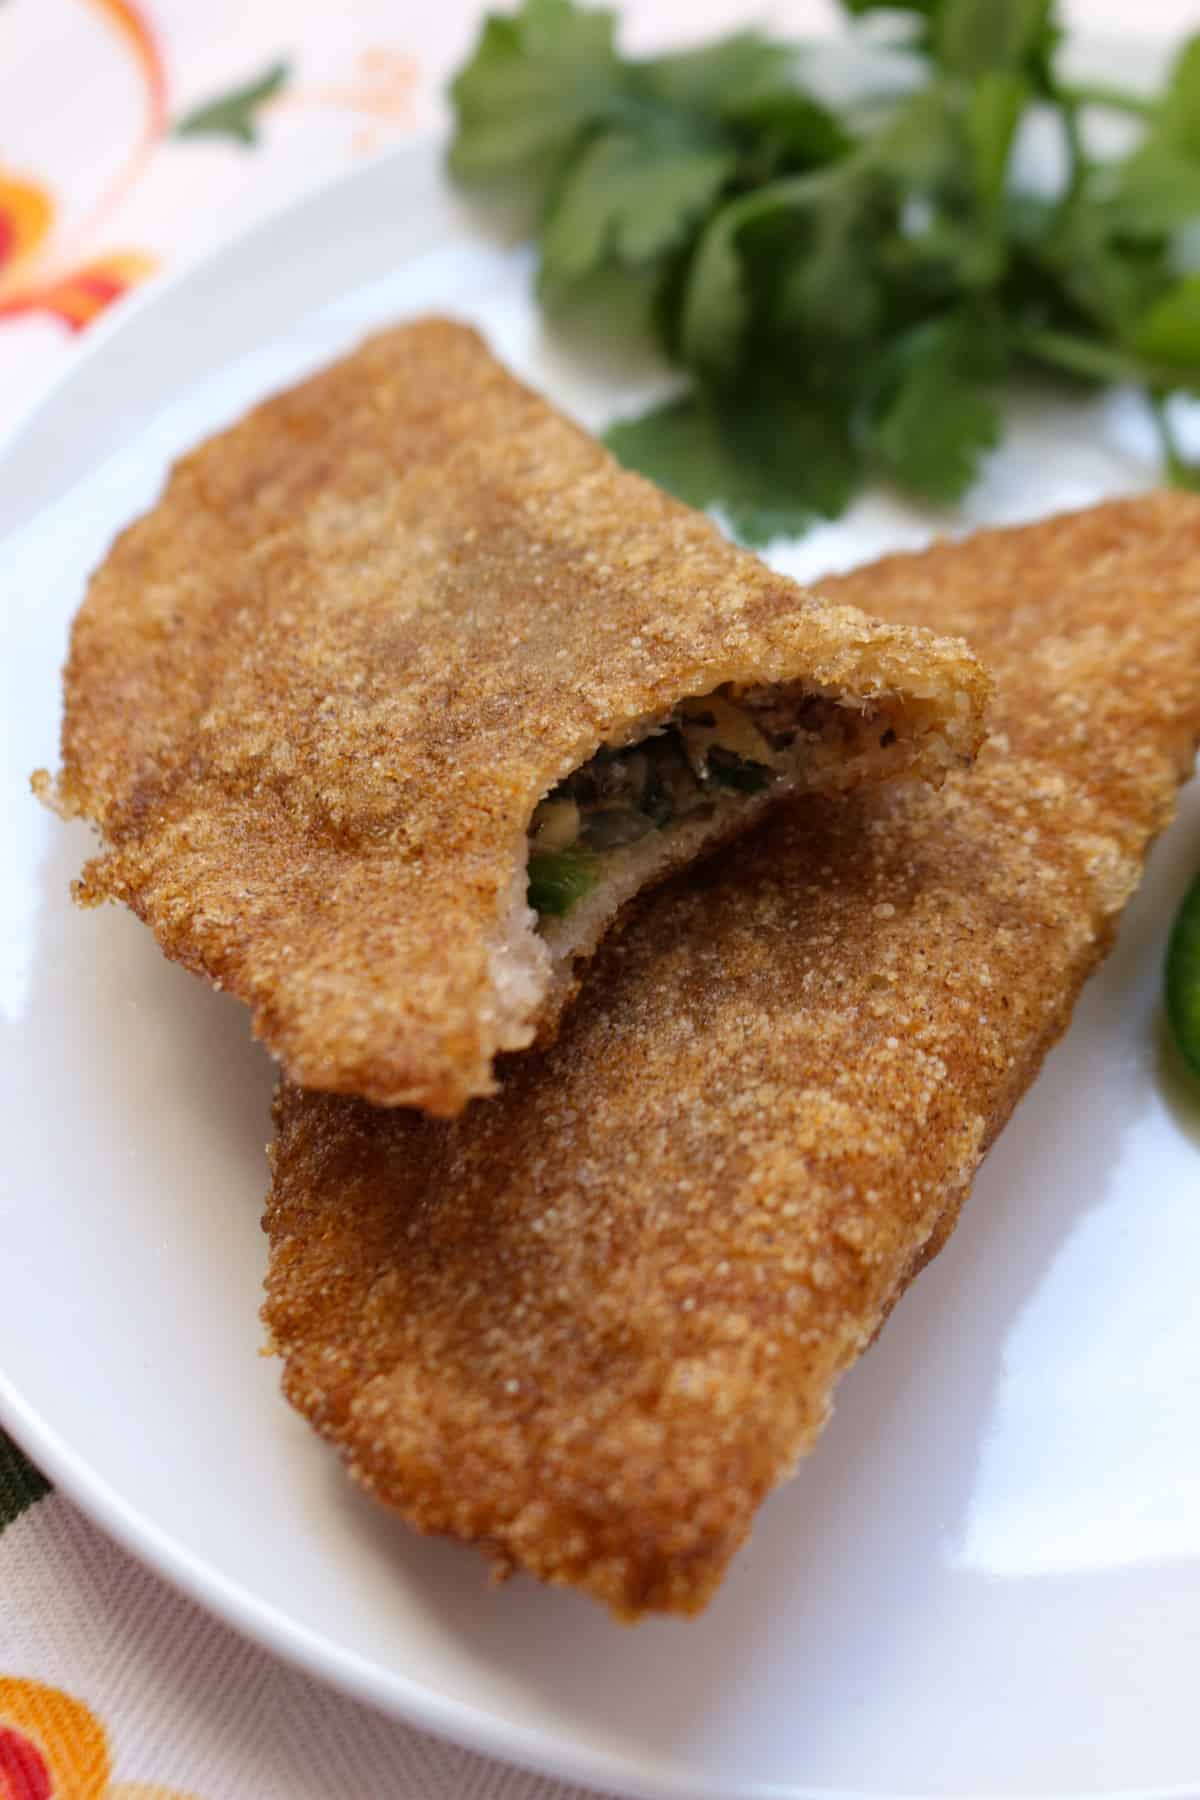 Two gluten-free sardine empanadas on a plate